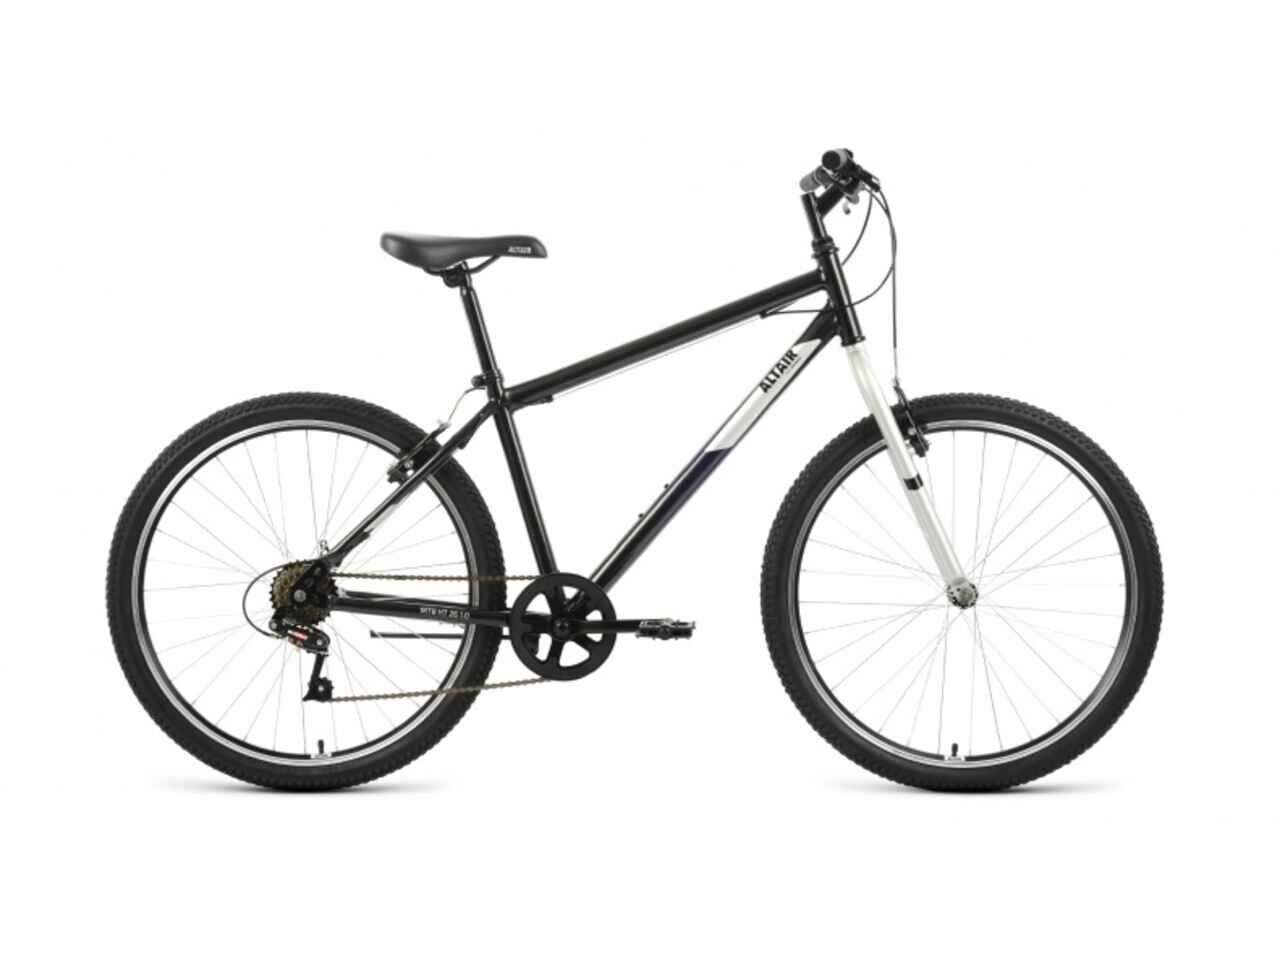 Велосипед ALTAIR MTB HT 26 1.0 (17, черный/серый, 2022)